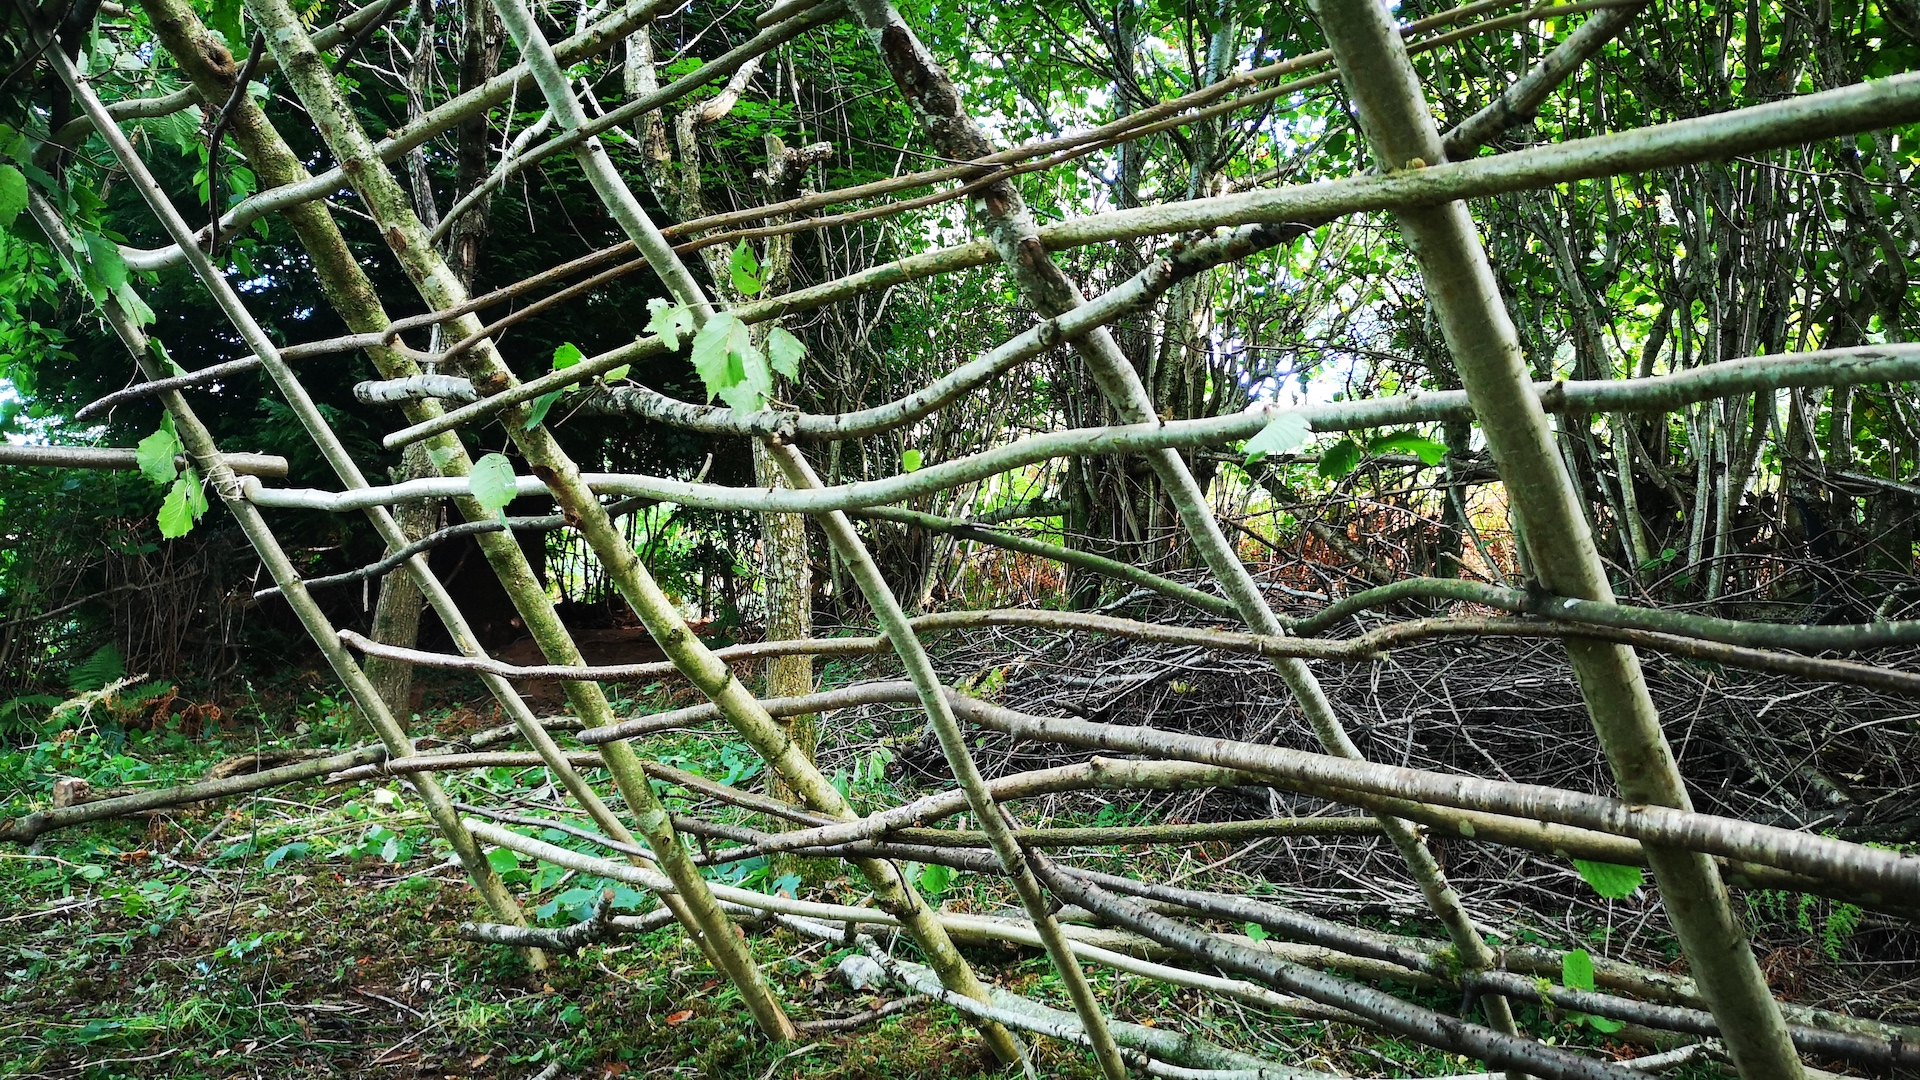 Tejiendo ramas como parte de la construcción de un refugio a partir de recursos naturales